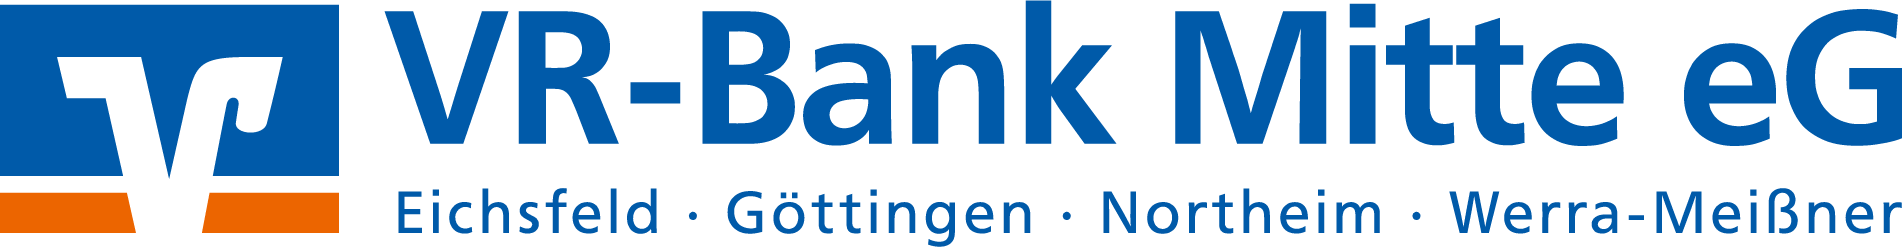 Logo VR-Bank Mitte eG_Logo_links